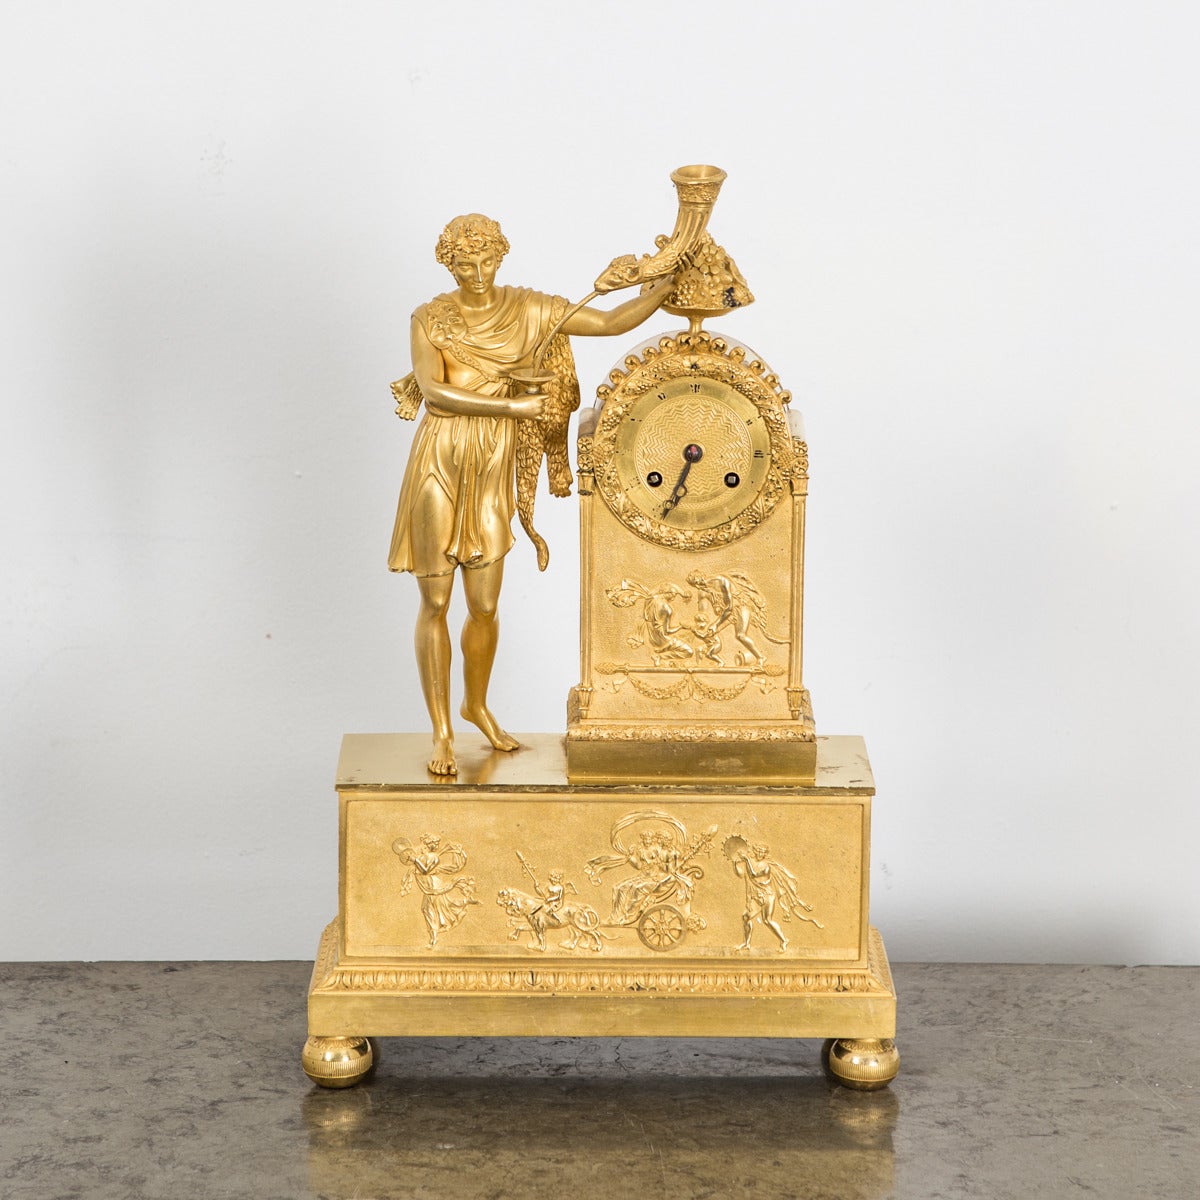 Horloge de manteau en bronze doré néoclassique empire français 19ème siècle France. Un manteau français en bronze doré décoré de symboles néoclassiques tels qu'un homme romain vêtu d'une toge portant une corne - le symbole de la richesse.